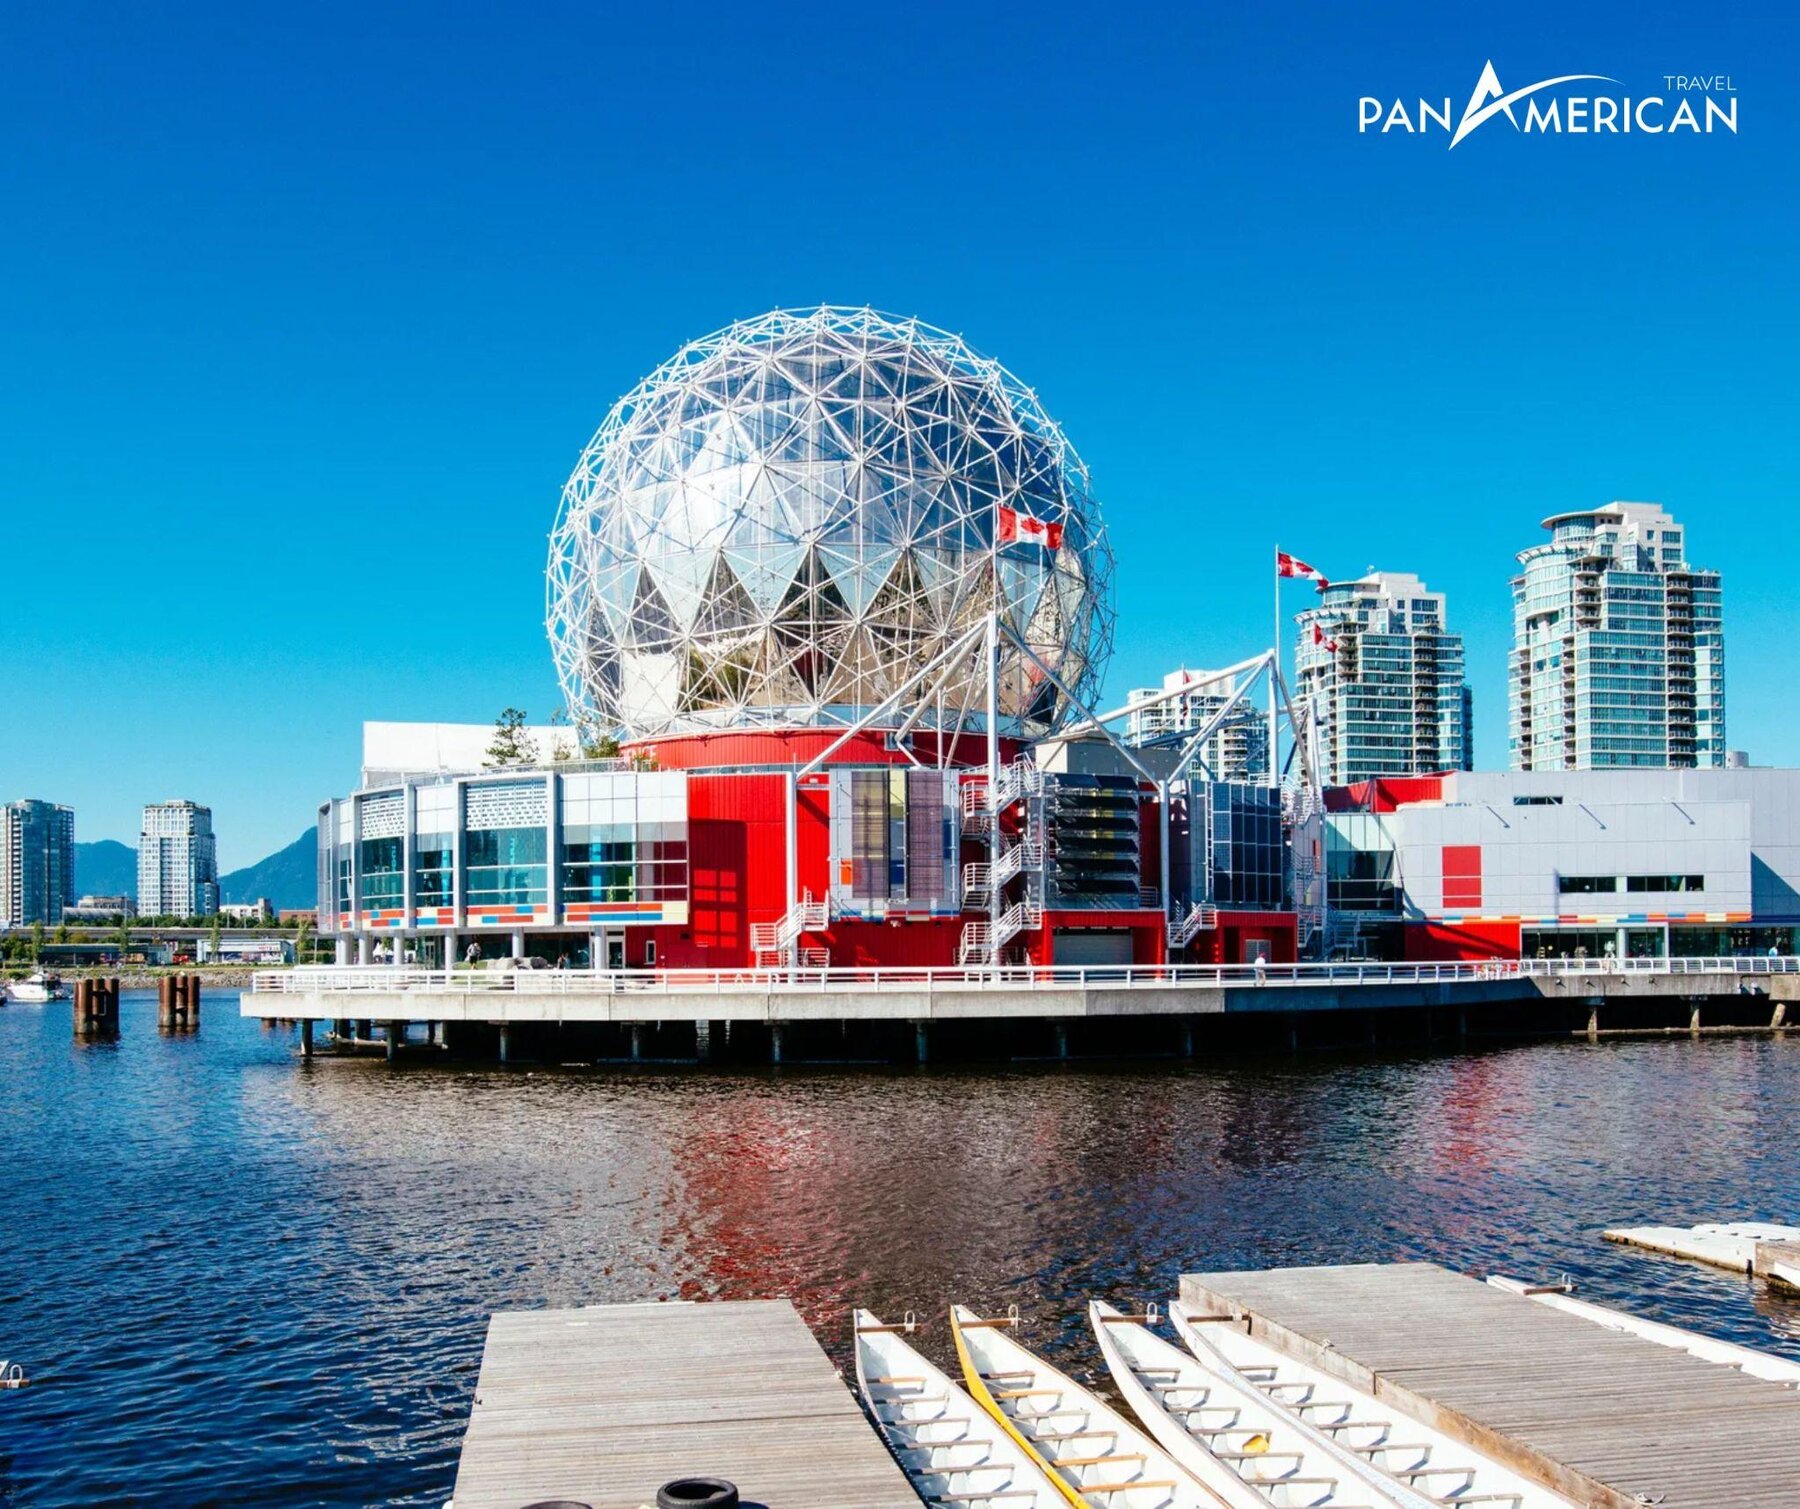 Du lịch và thương mại là những hoạt động kinh tế nổi bật ở Vancouver